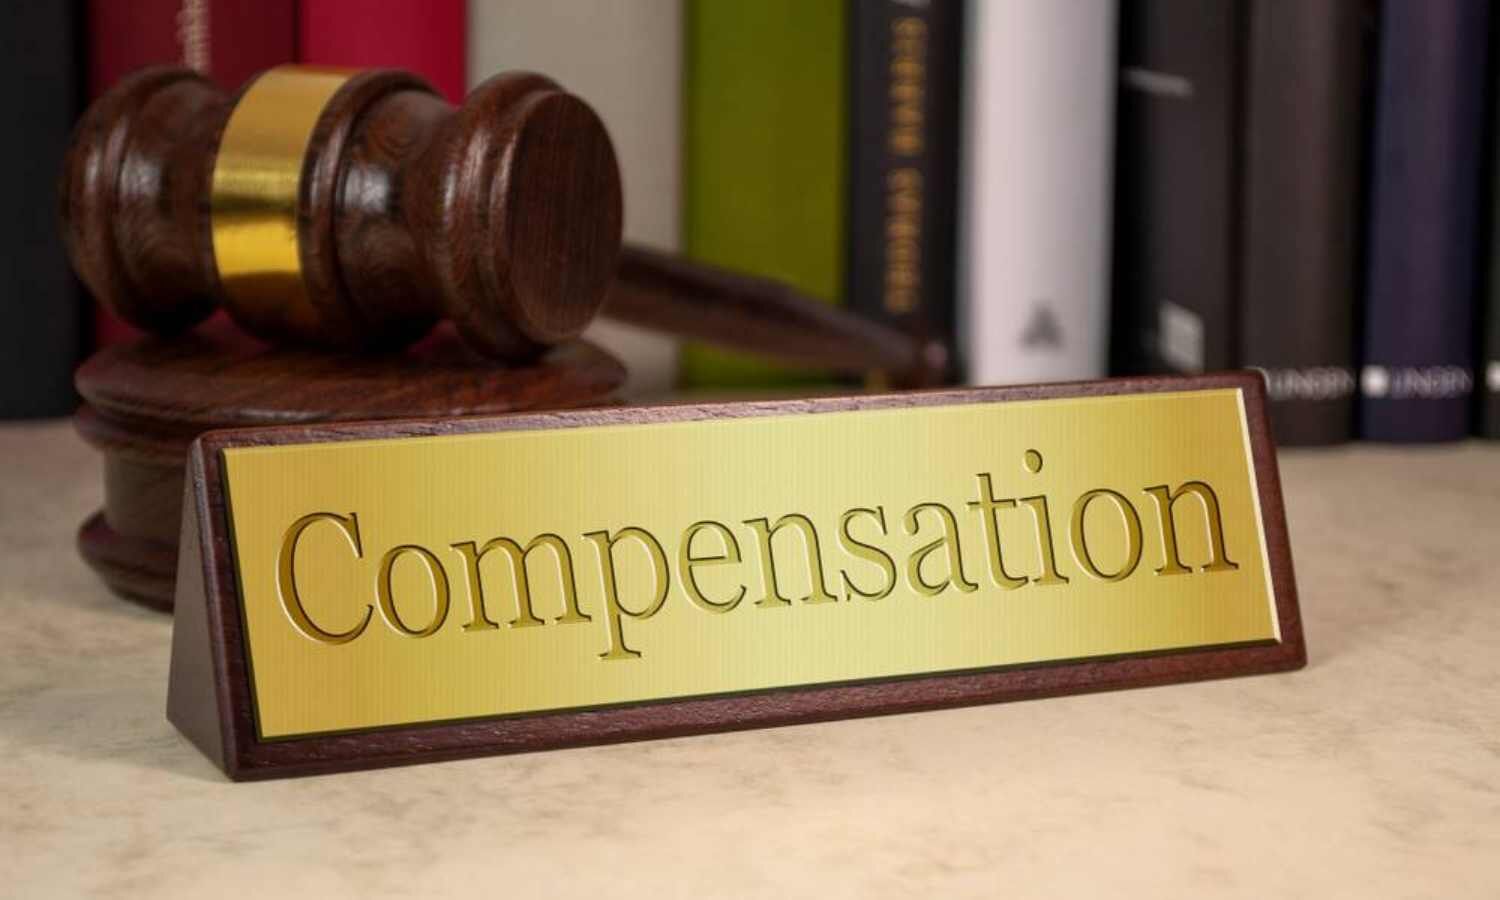 Patient demands Rs 50 lakh compensation